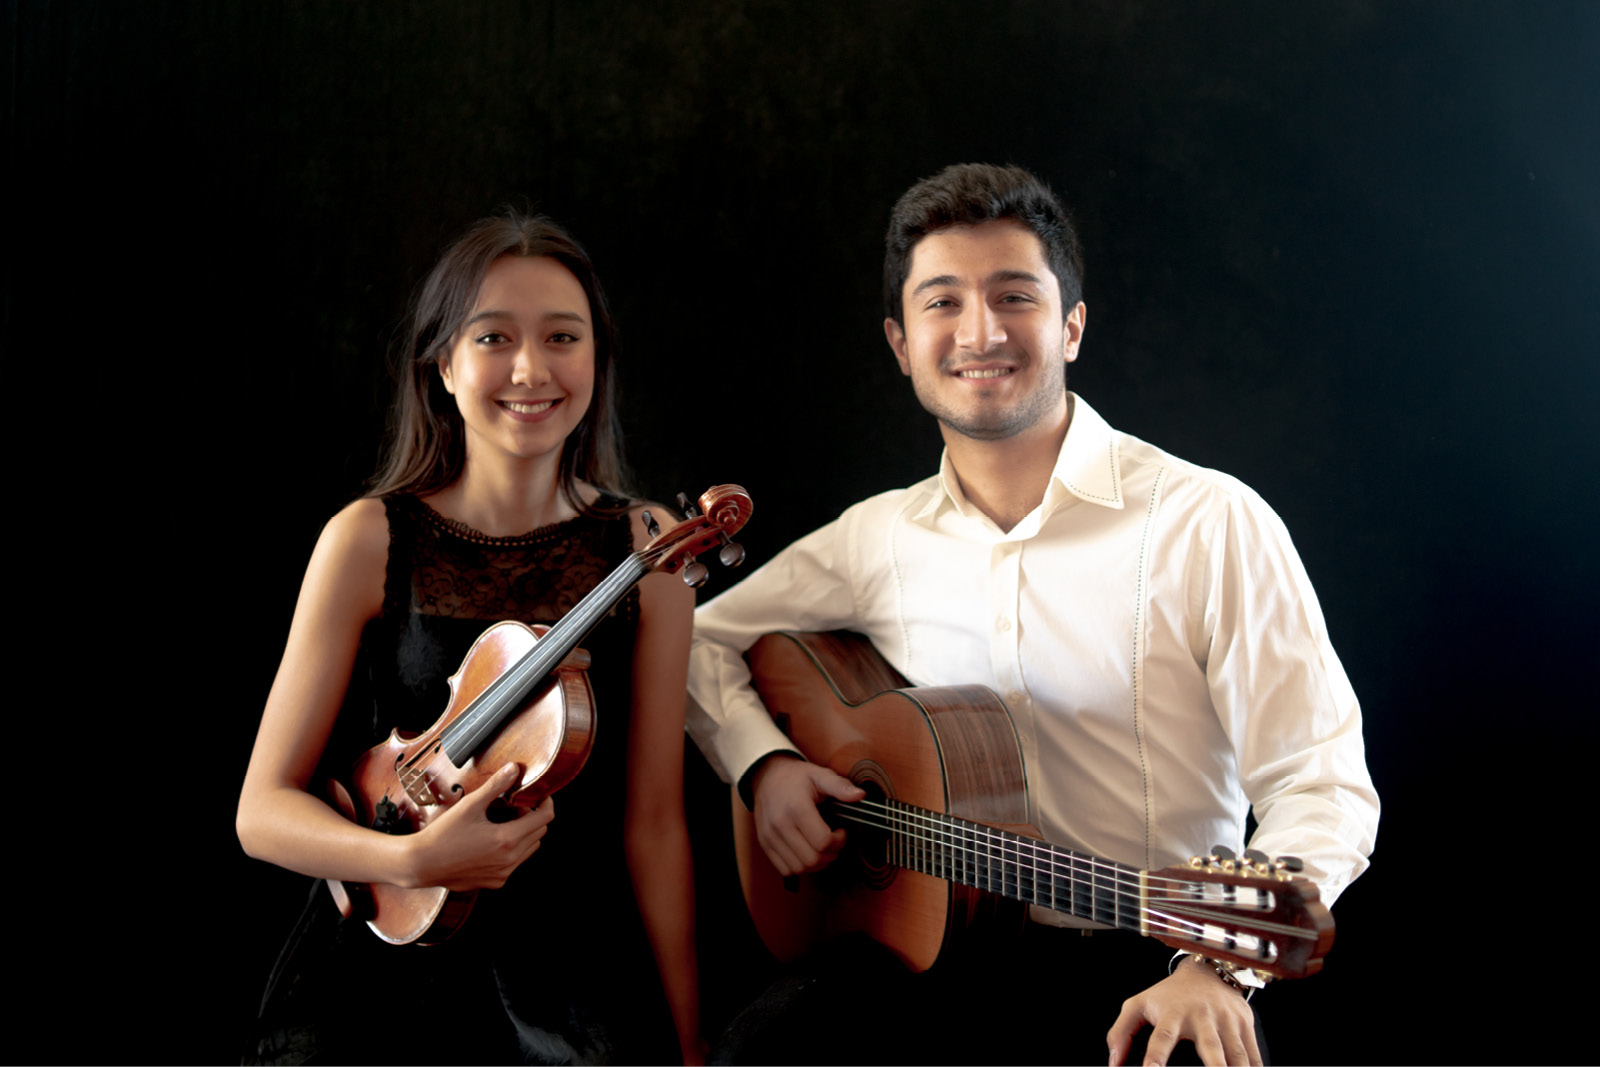 Anna Da Silva Chen and Sako Dermenjian